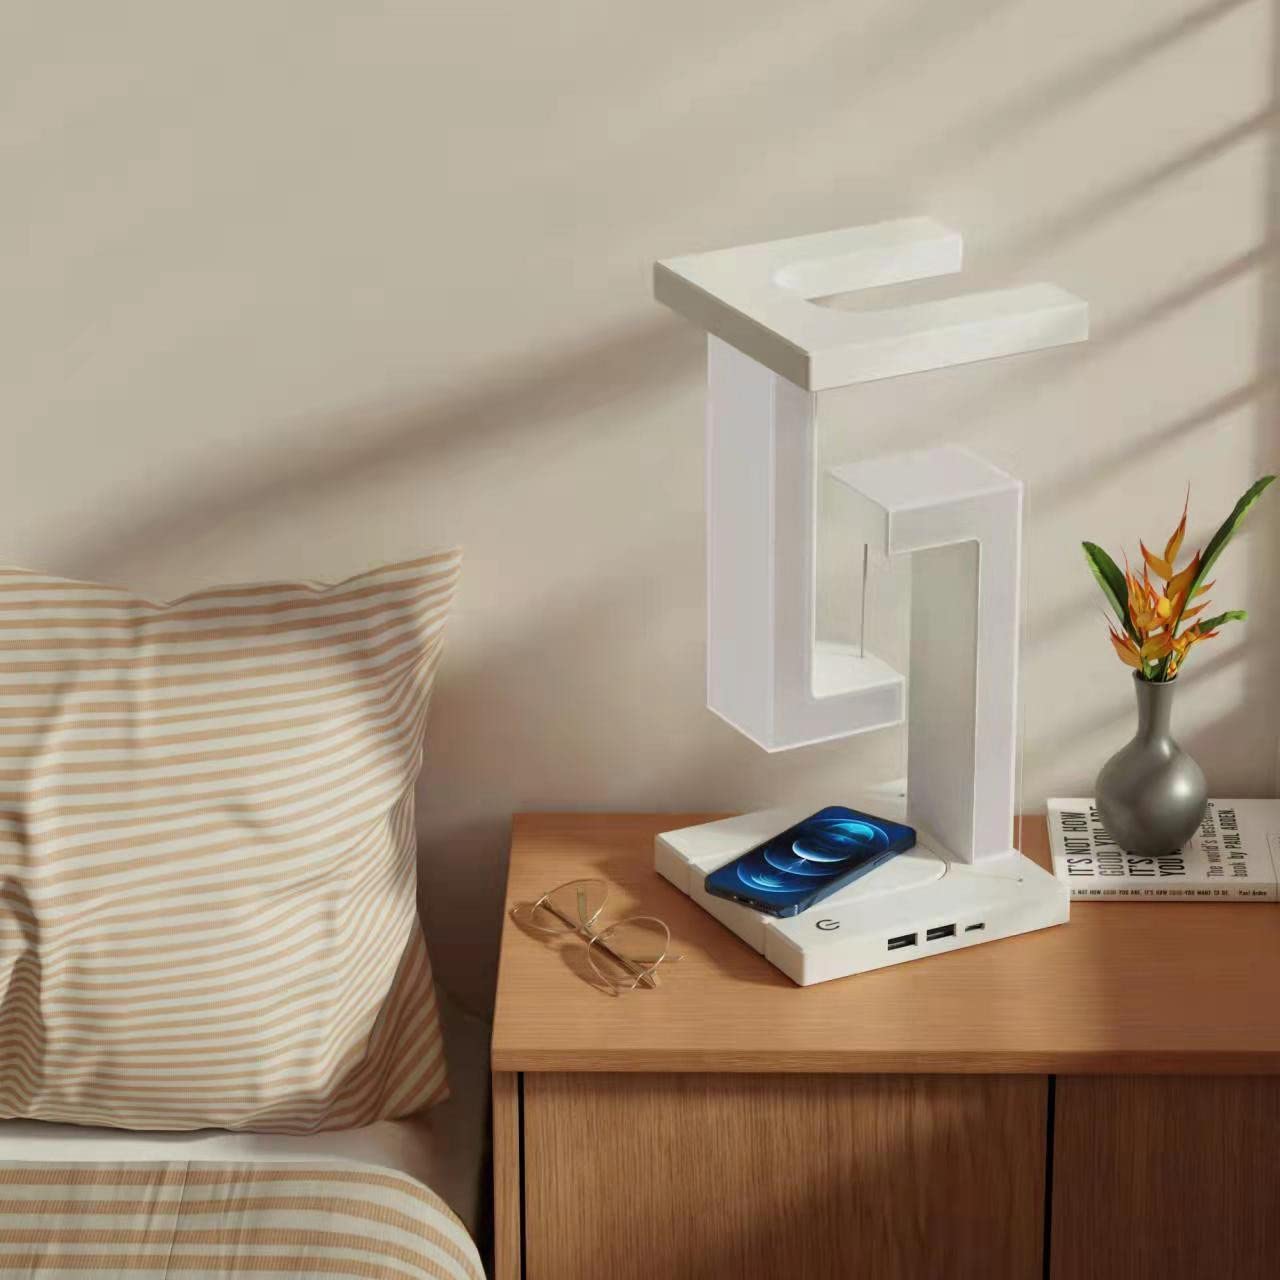 Brandneue kreative Smartphone drahtlose lade Suspension Tisch Lampe Balance Lampe  Schlafzimmer